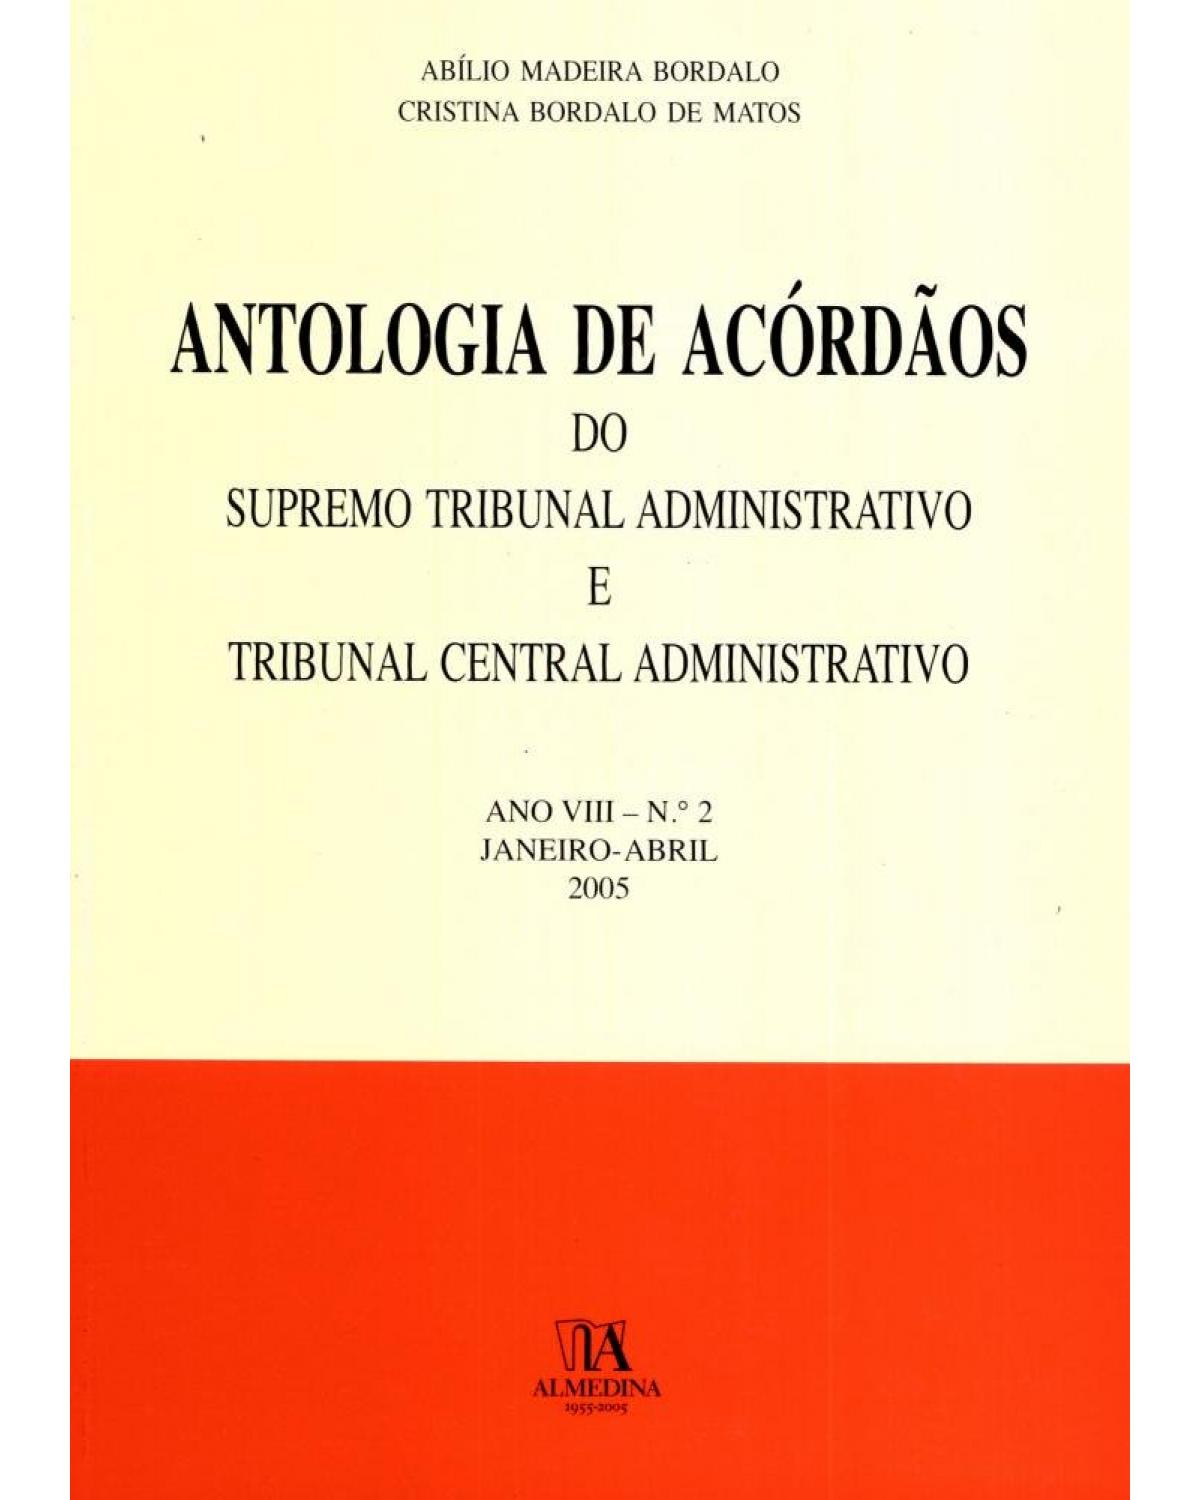 Antologia de acórdãos do supremo tribunal administrativo e tribunal central administrativo - ano VIII:  Janeiro-abril 2005 - 1ª Edição | 2005